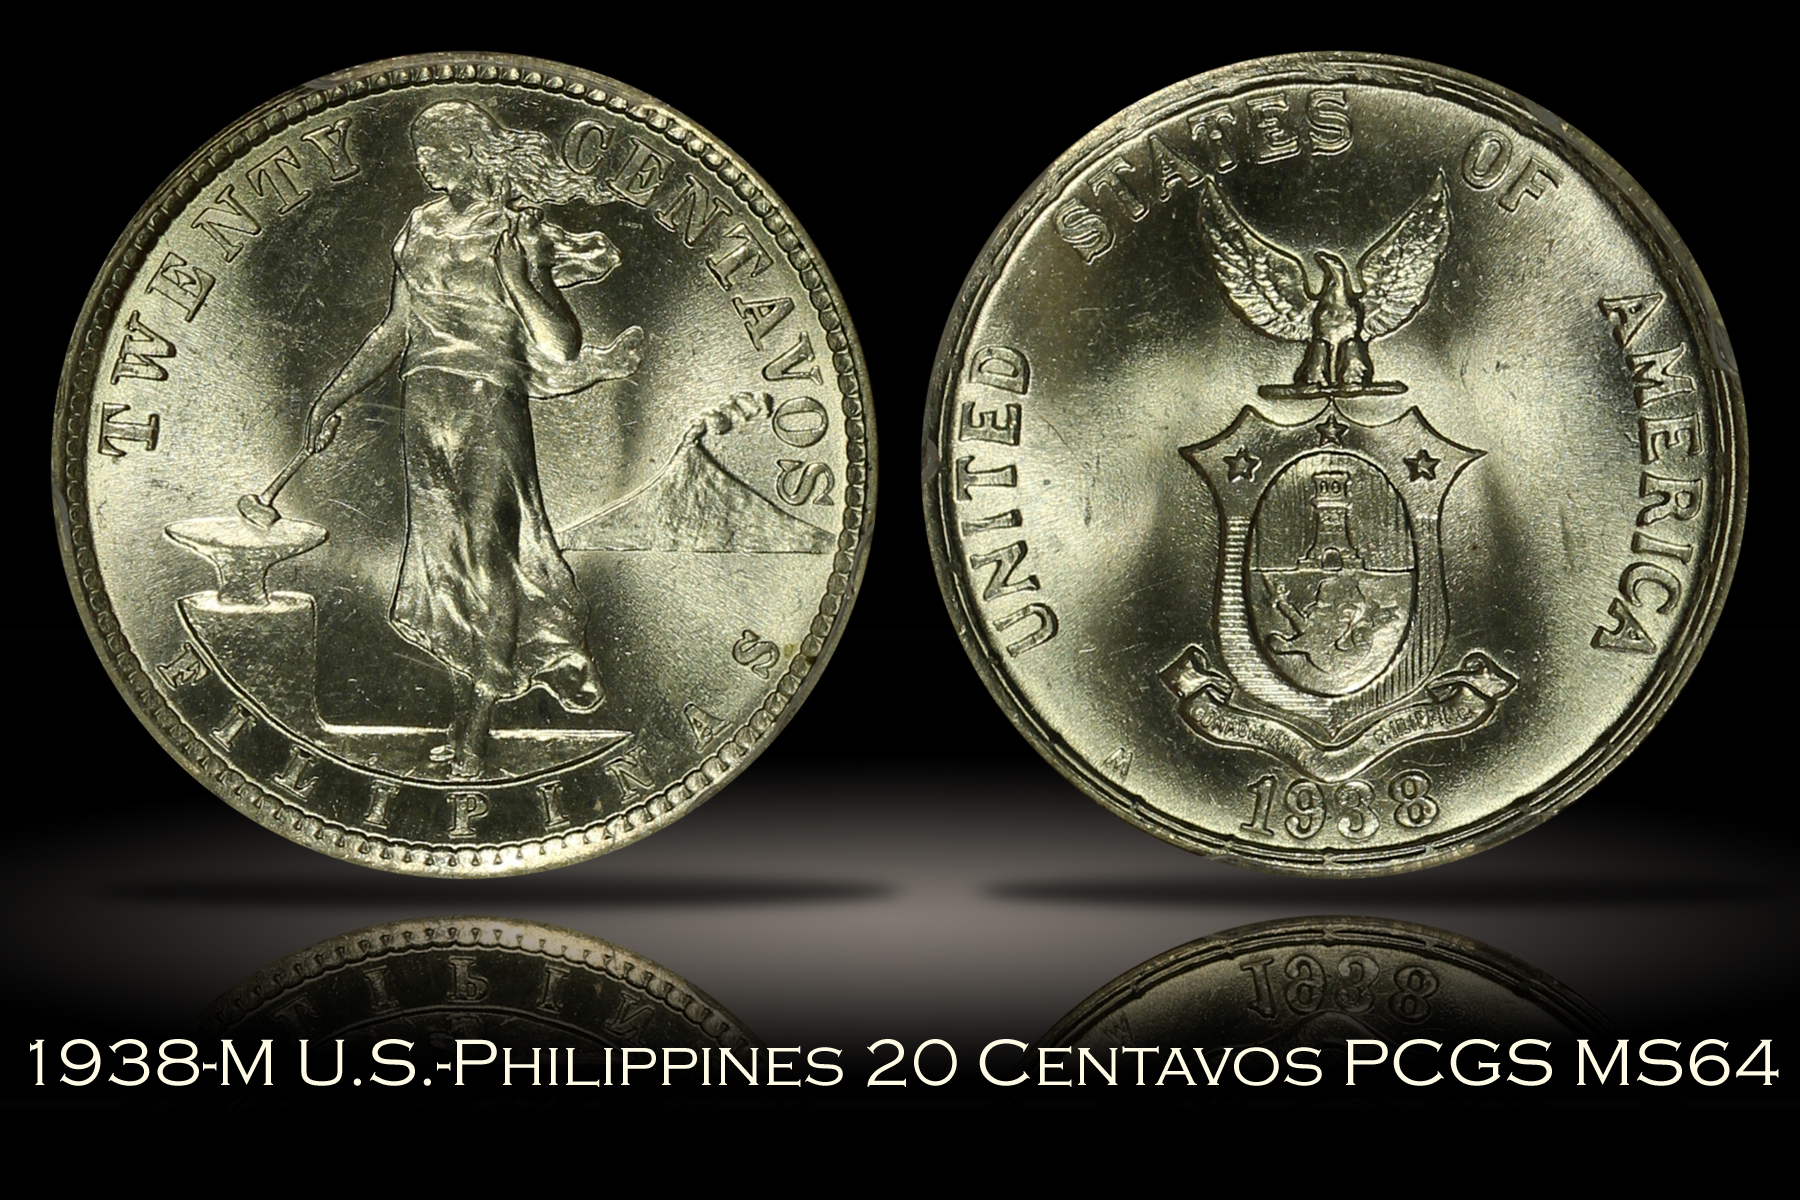 1938-M U.S.-Philippines 20 Centavos PCGS MS64